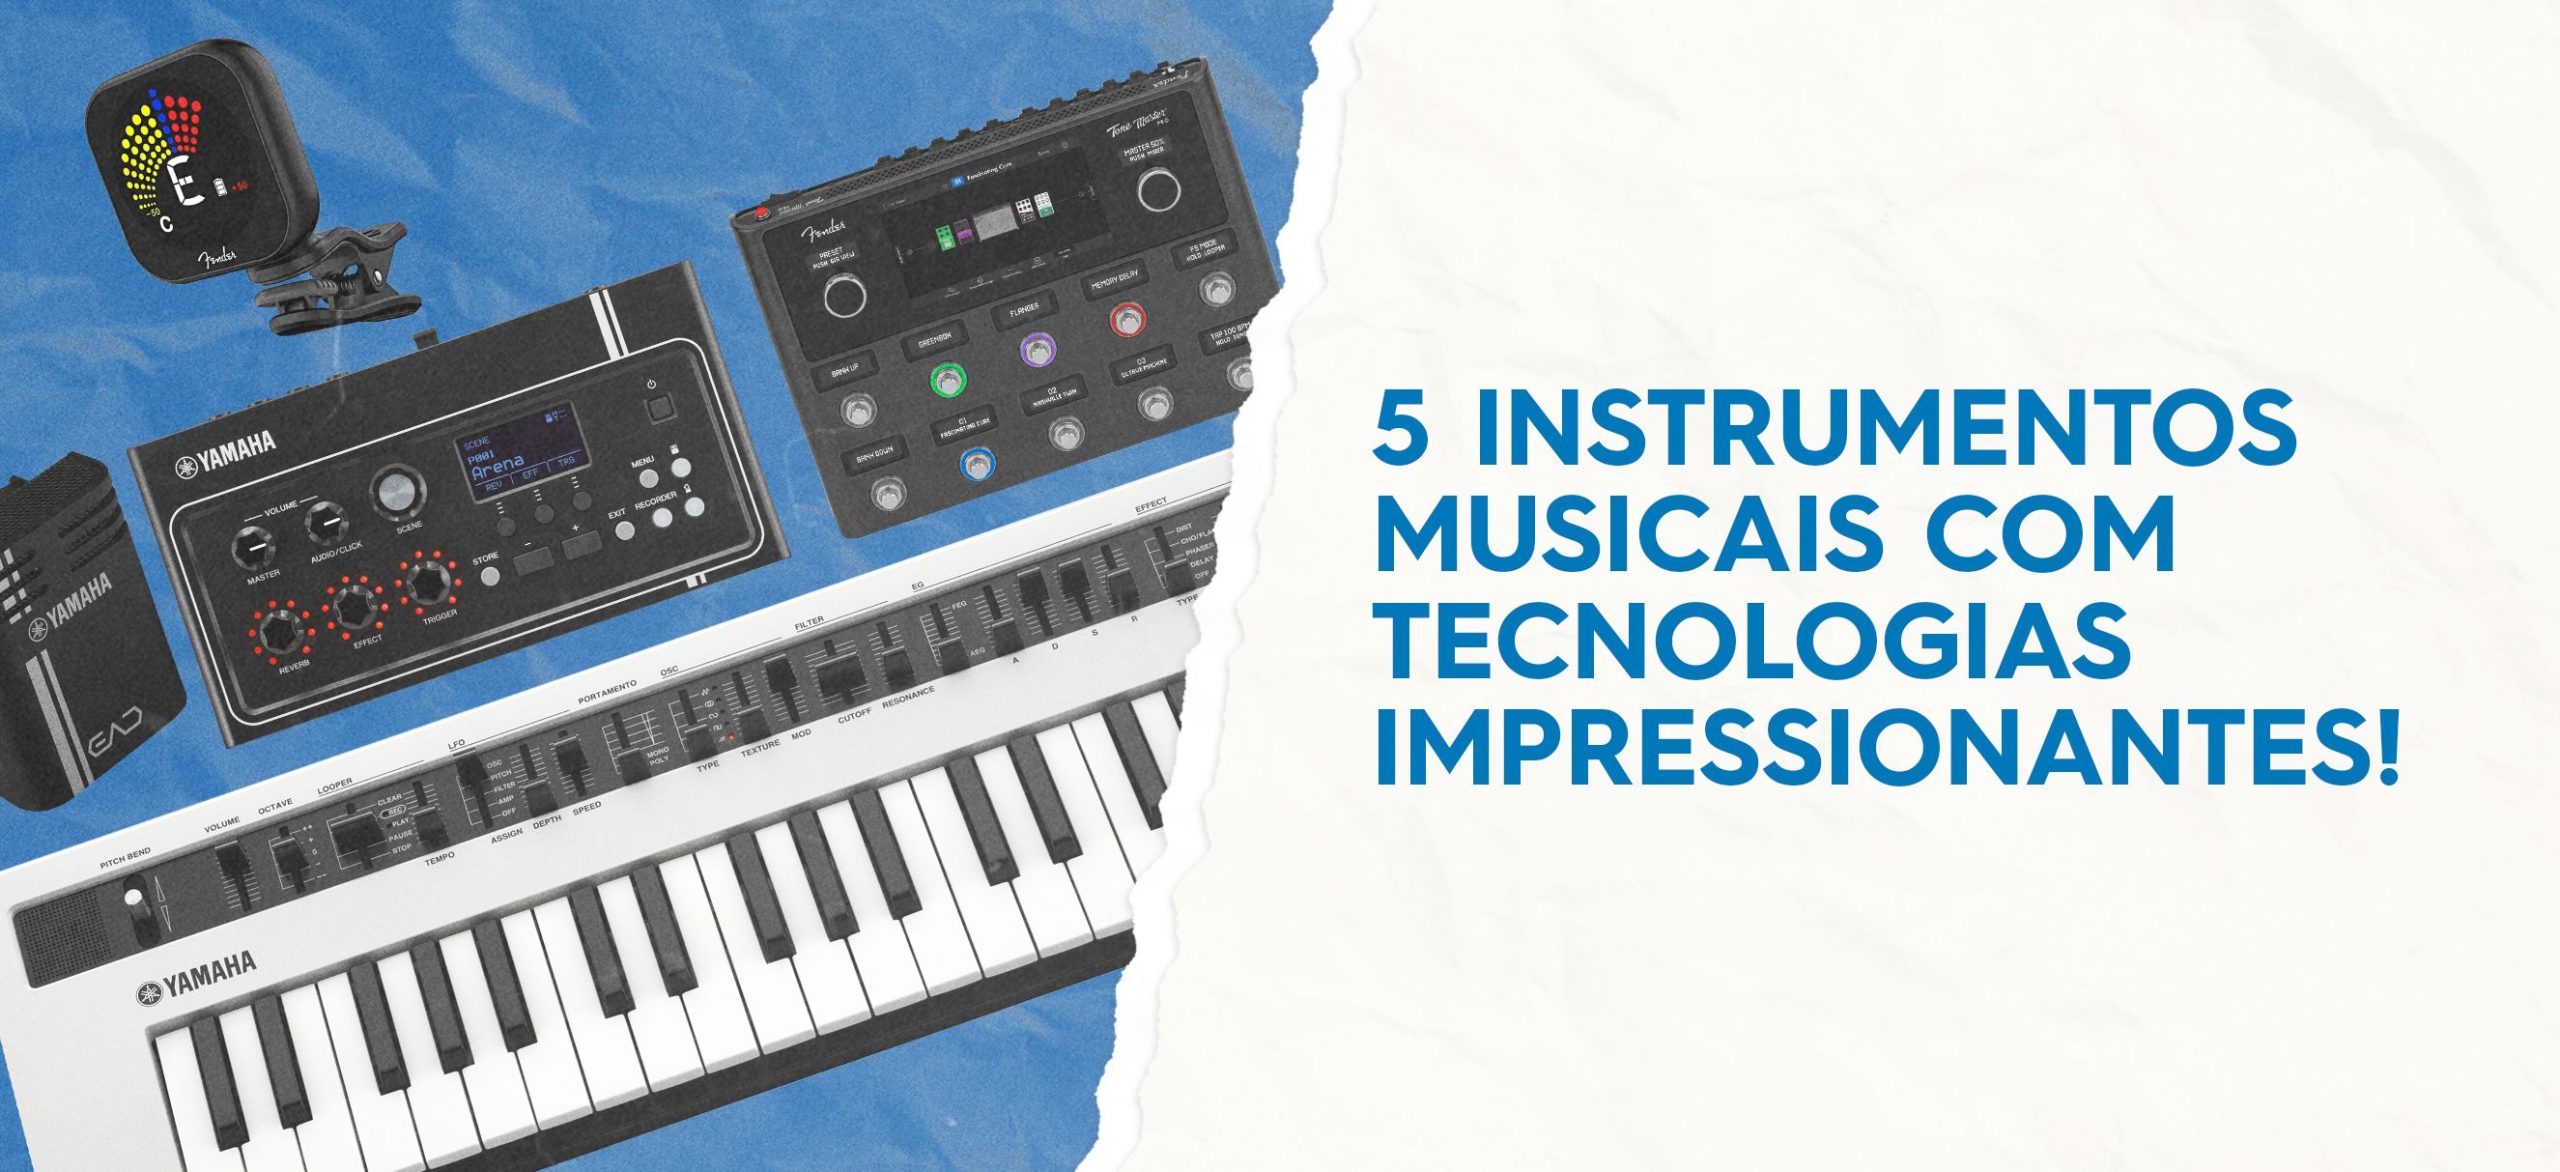 5 instrumentos musicais com tecnologias impressionantes!